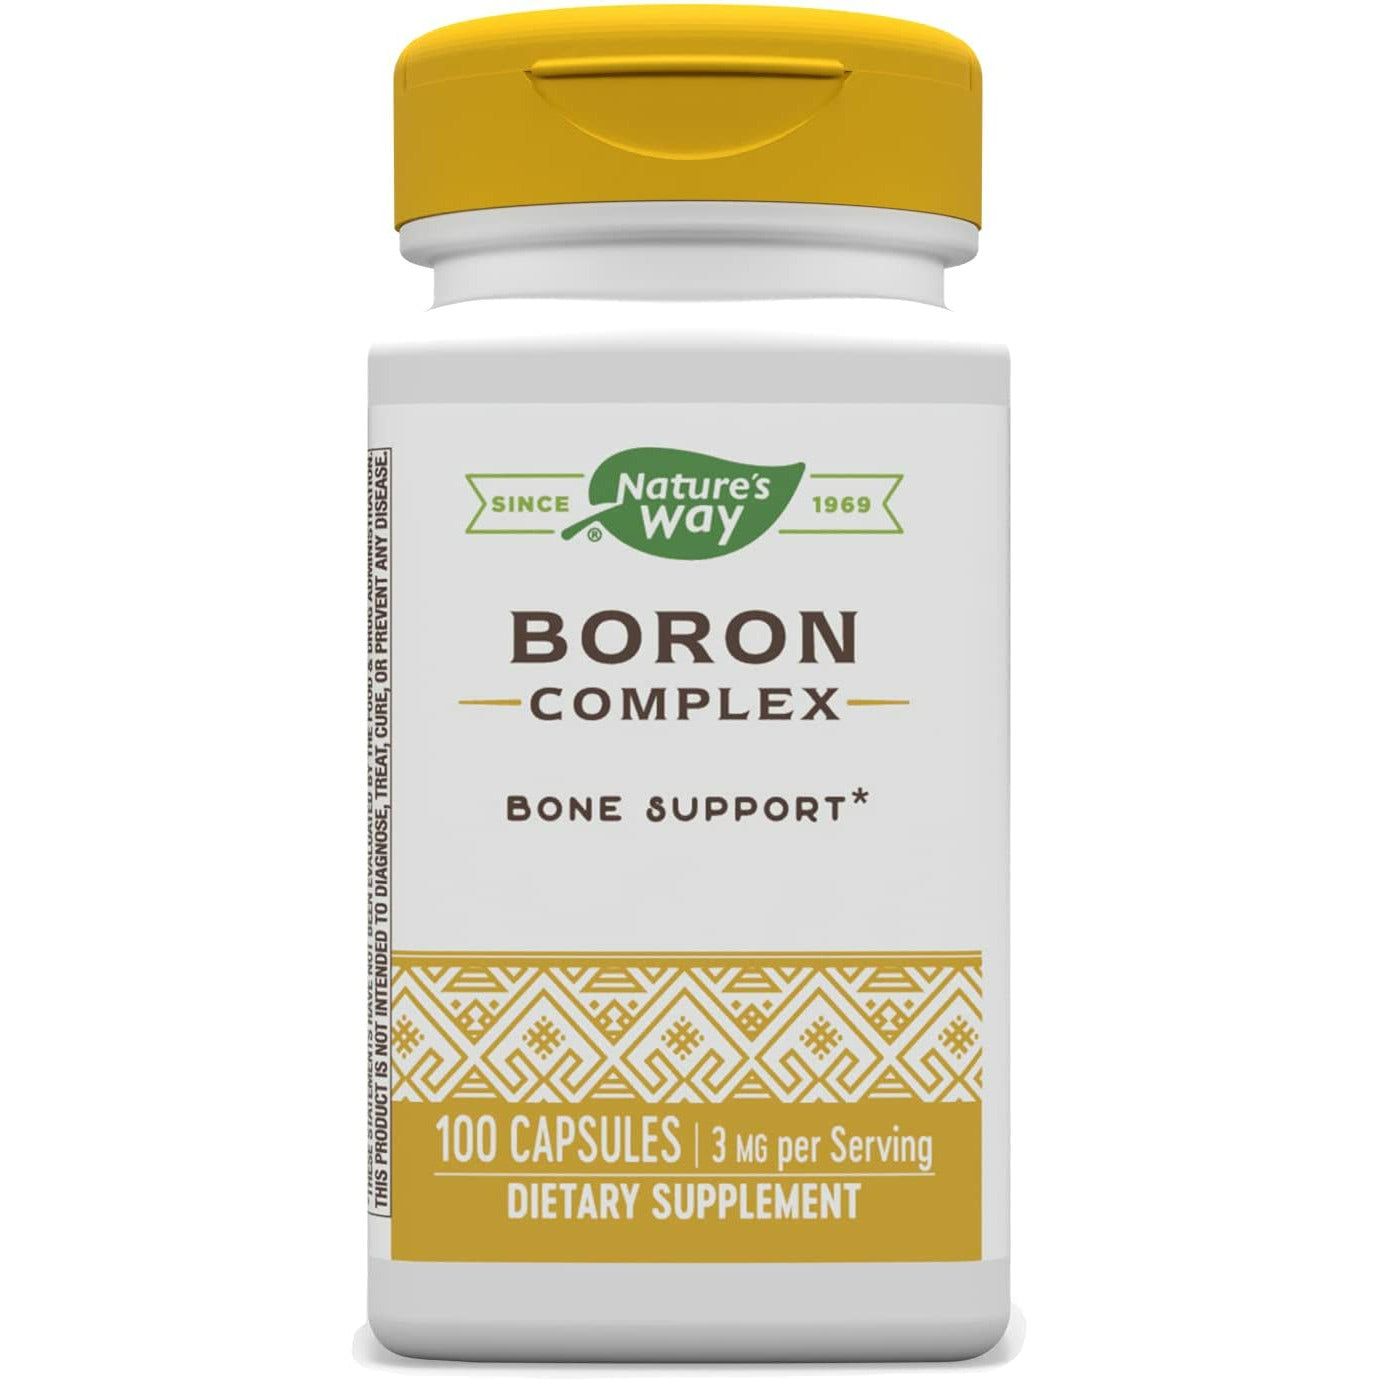 Nature's Way Boron Complex, 3 mg per serving